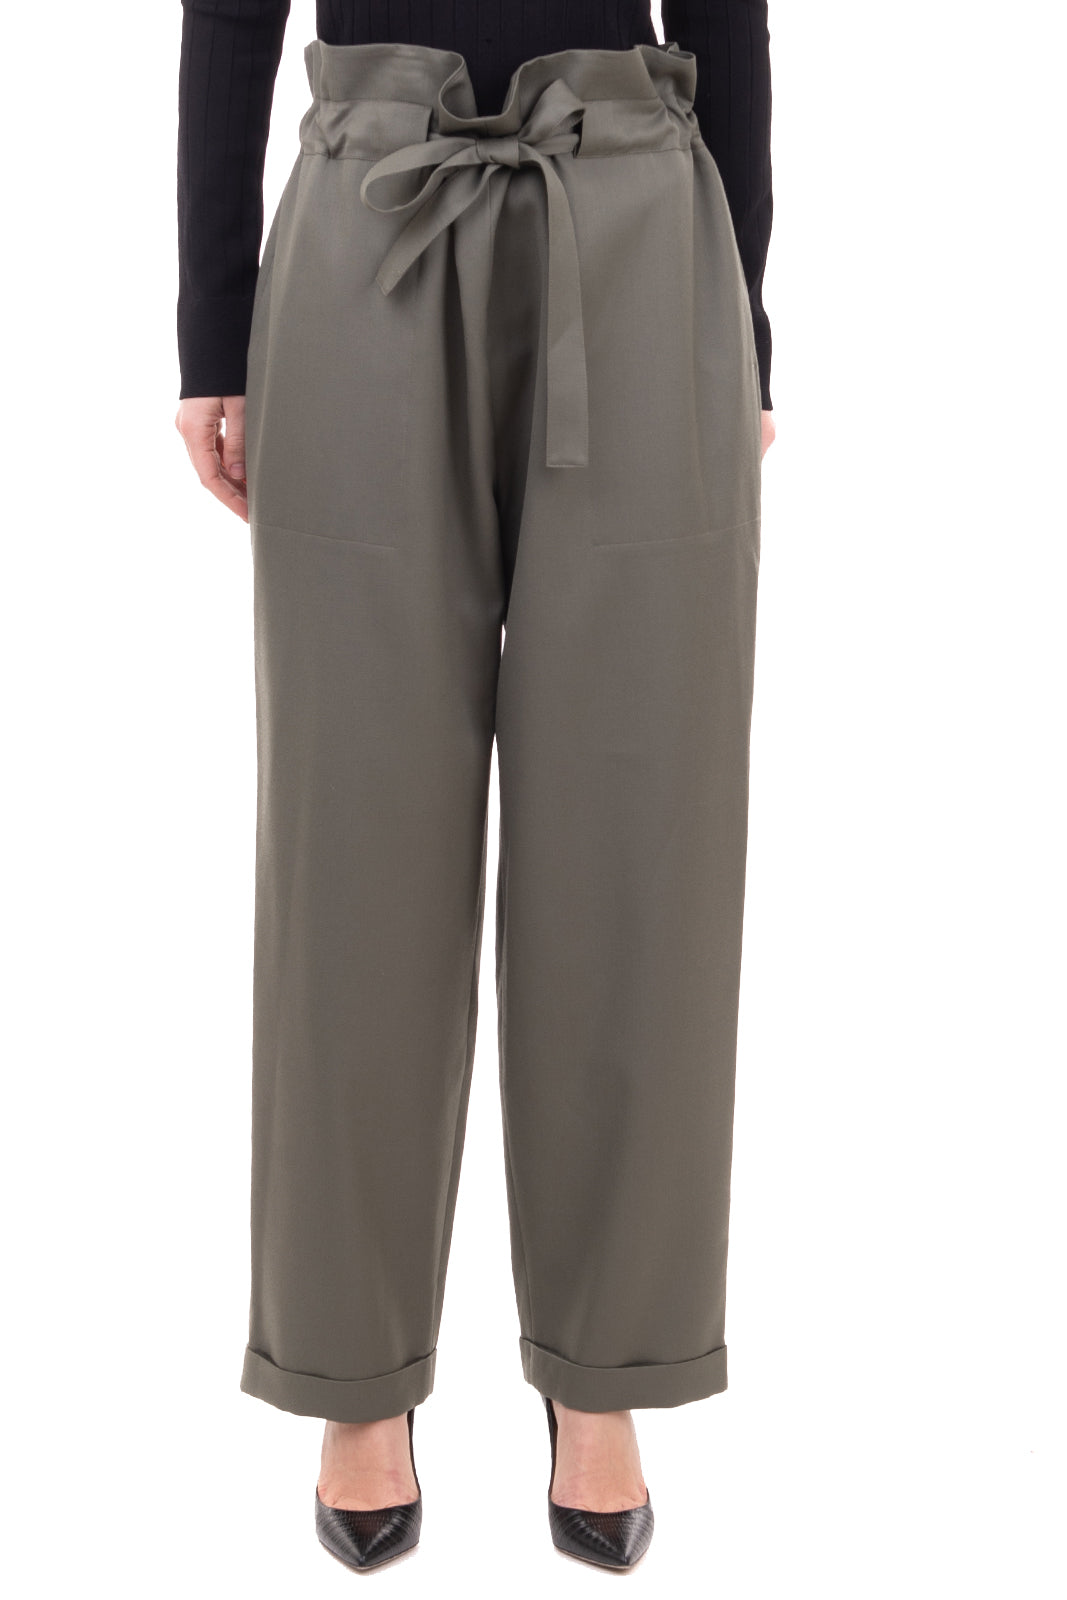 Buy Beige Trousers & Pants for Women by Laavni Online | Ajio.com